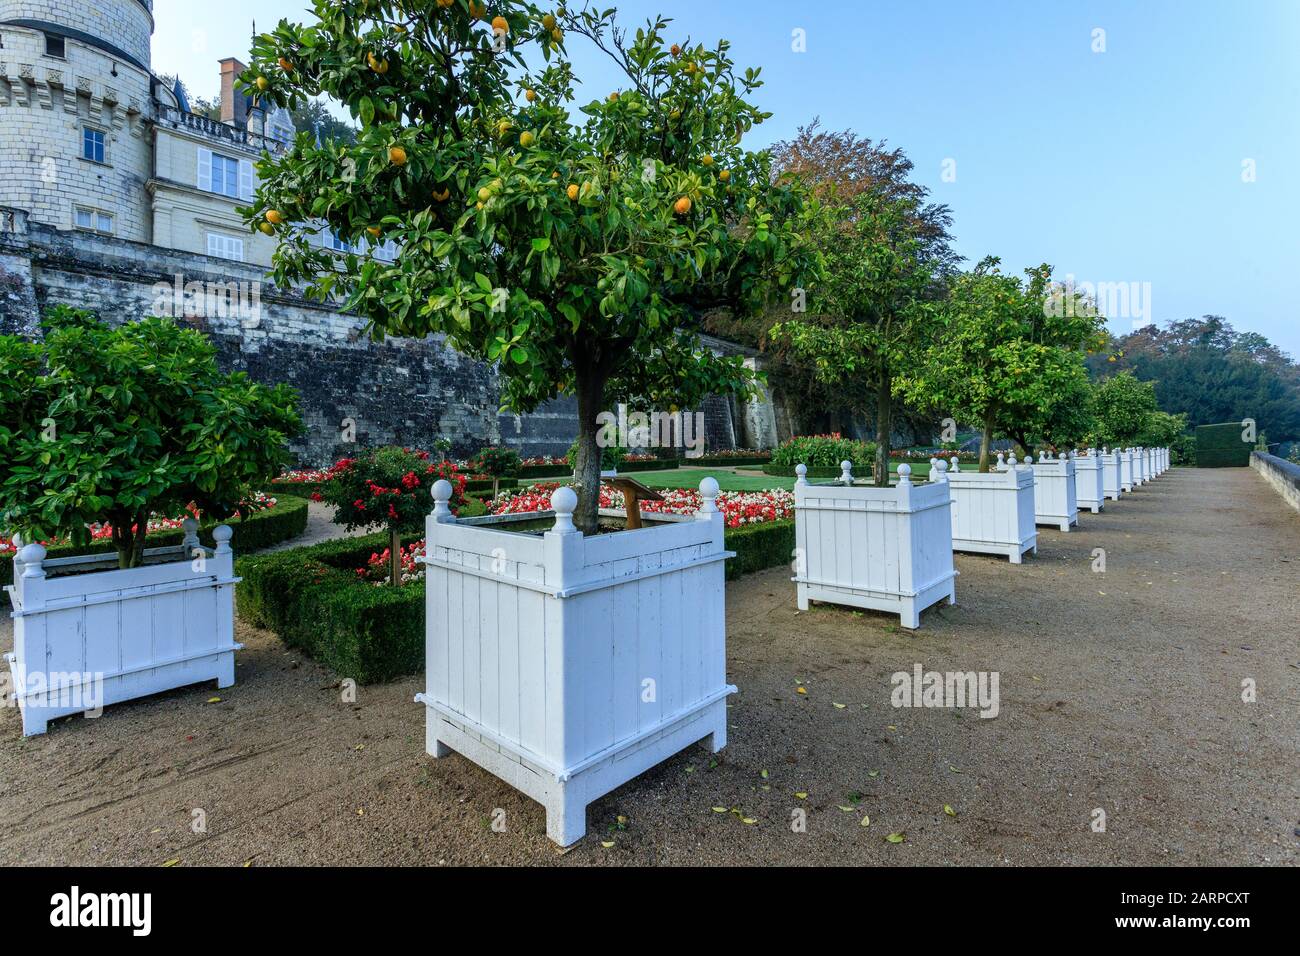 Frankreich, Indre et Loire-Tal, das von der UNESCO zum Weltkulturerbe erklärt wurde, Rigny Usse, Gärten Chateau d'Usse, Töpfe mit Zitrusfrüchten im Oktober auf der Uppe Stockfoto